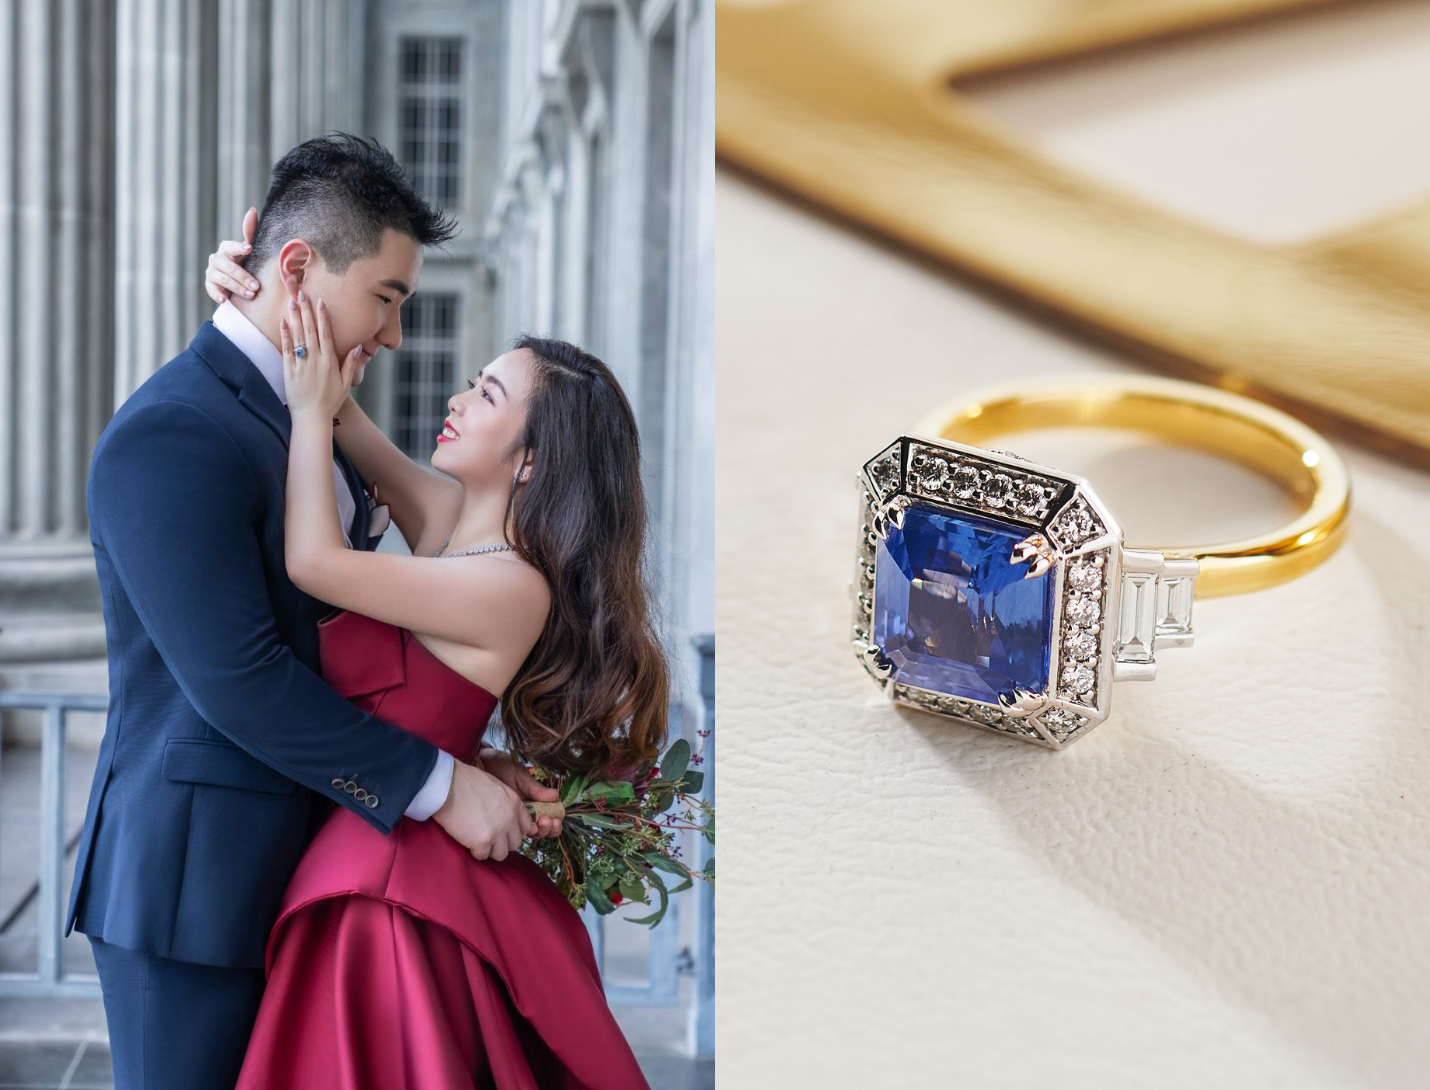 zhi hao amy singapore bridal marriage bespoke sapphire engagement ring